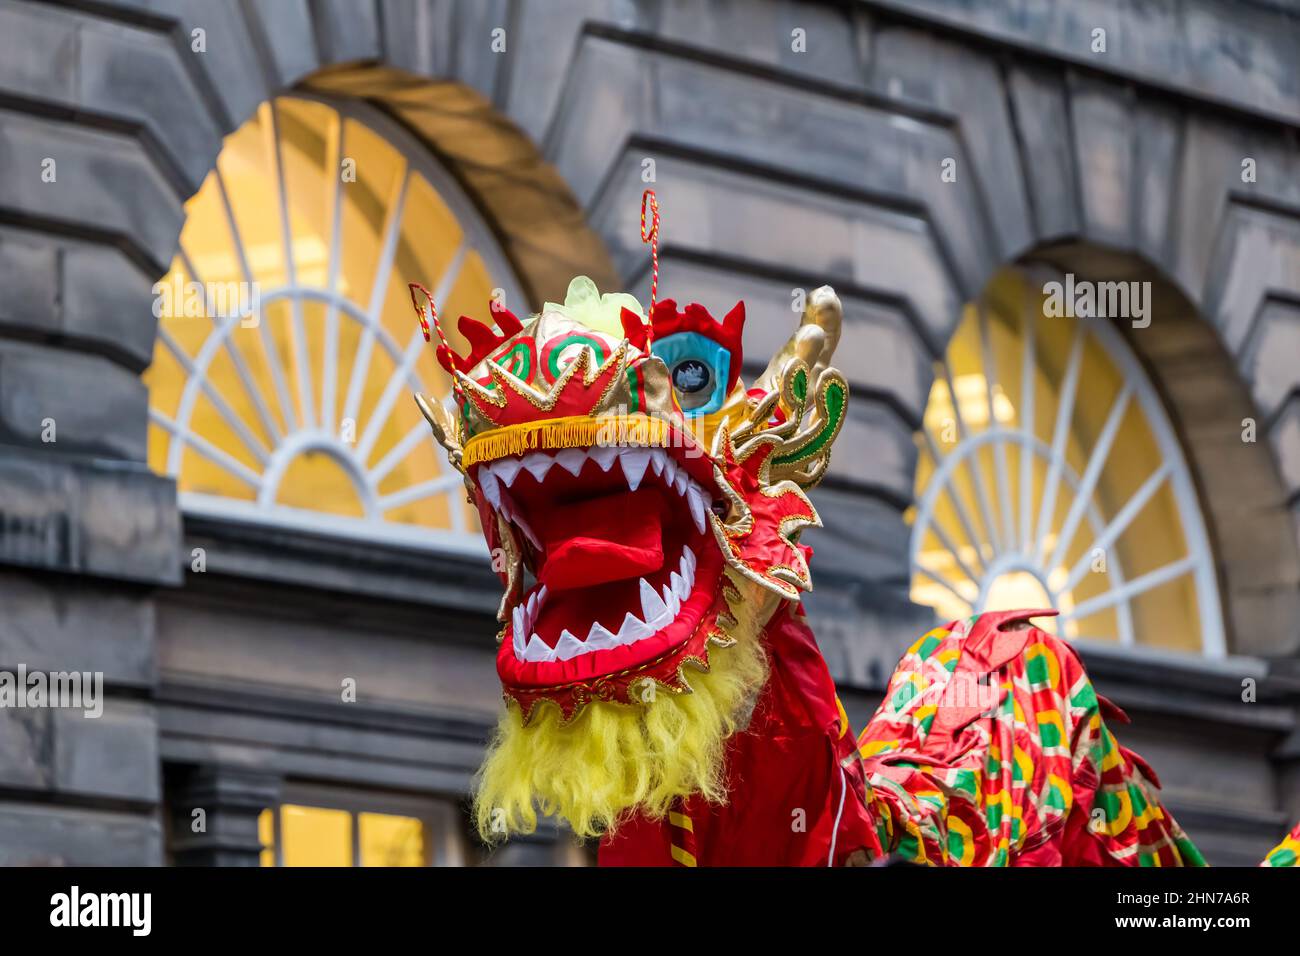 Chinesische Neujahrsfeier mit einem bunten Drachen, City Chambers, Edinburgh, Schottland, Großbritannien Stockfoto